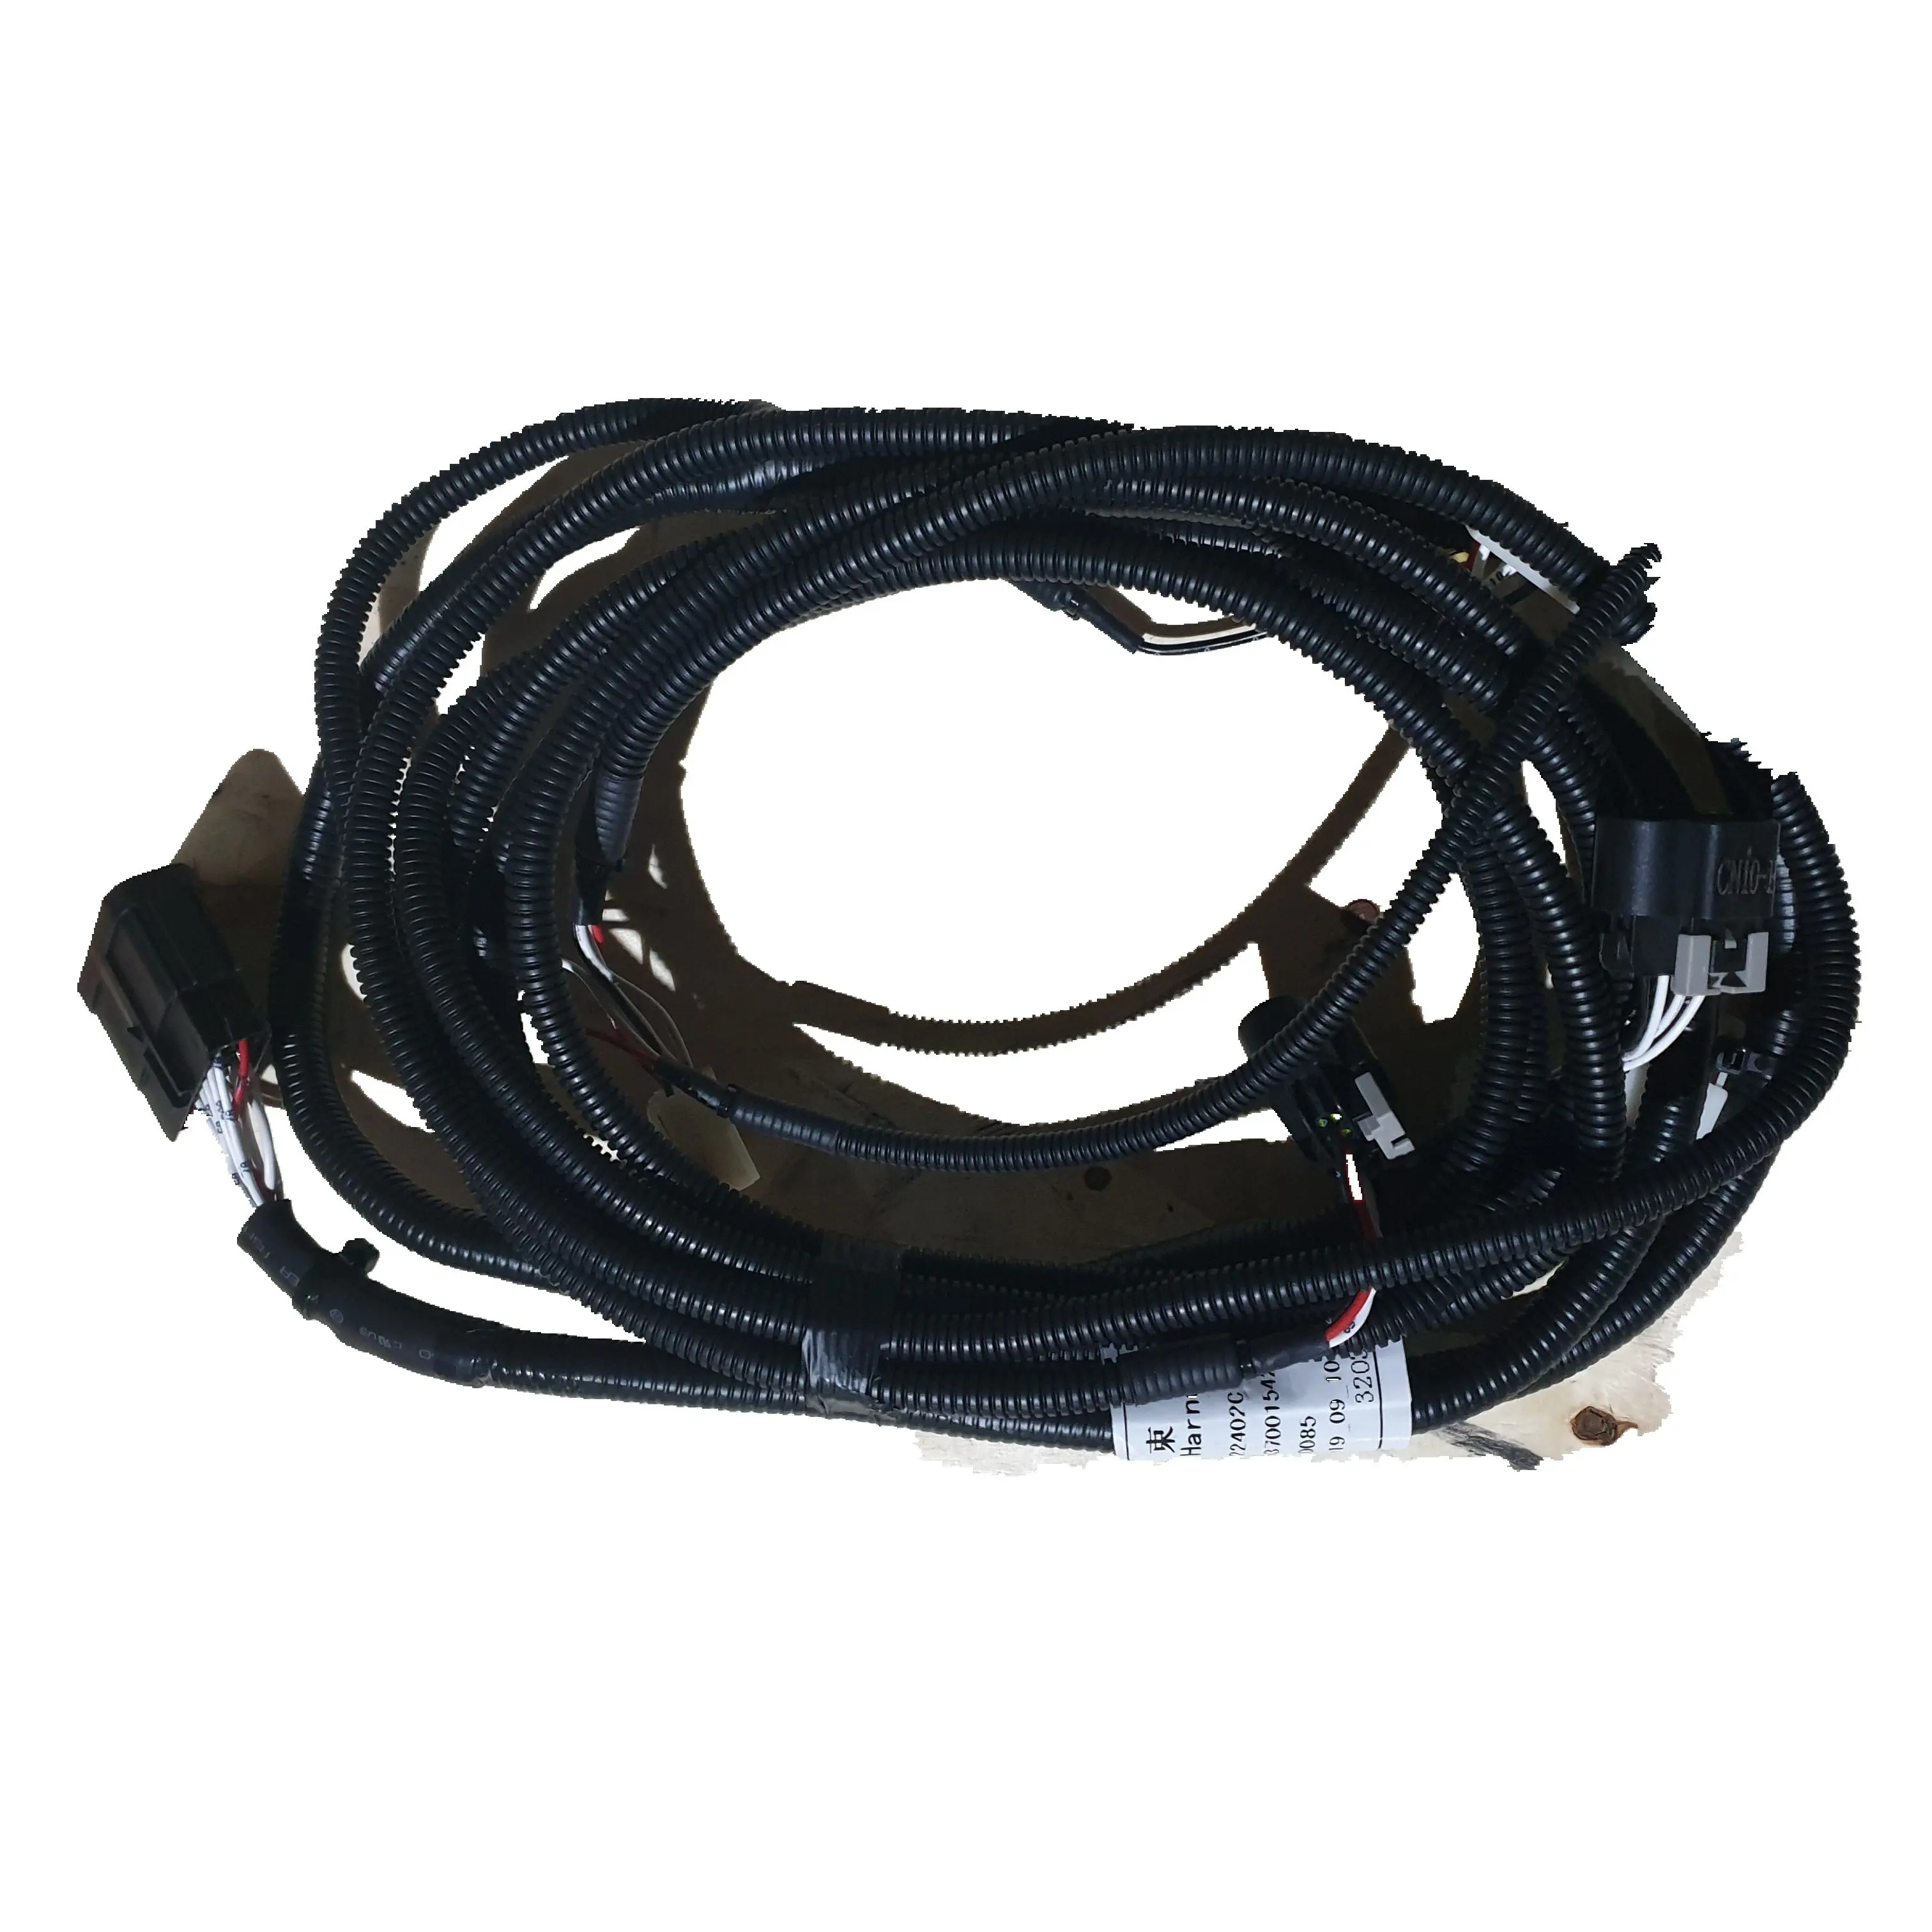 LG956L LG958L 29370015421 tali pengaman kabel untuk sistem elektronik Wheel loader